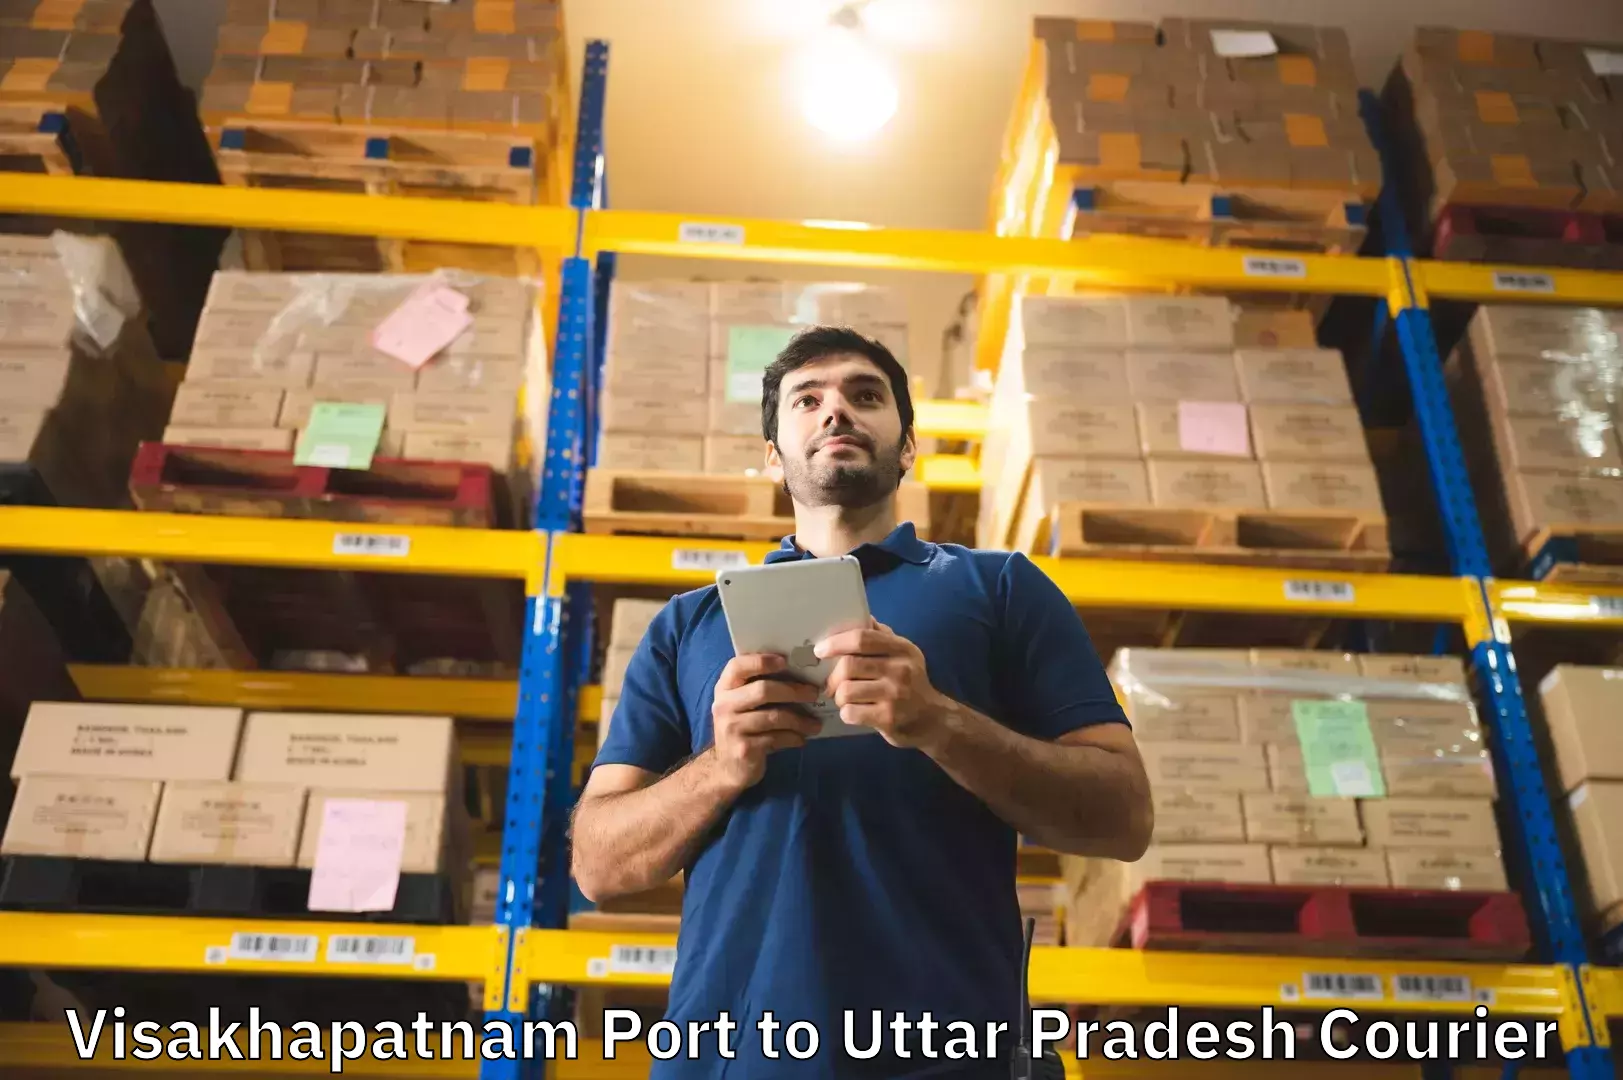 Luggage shipping specialists Visakhapatnam Port to Mohanlalganj